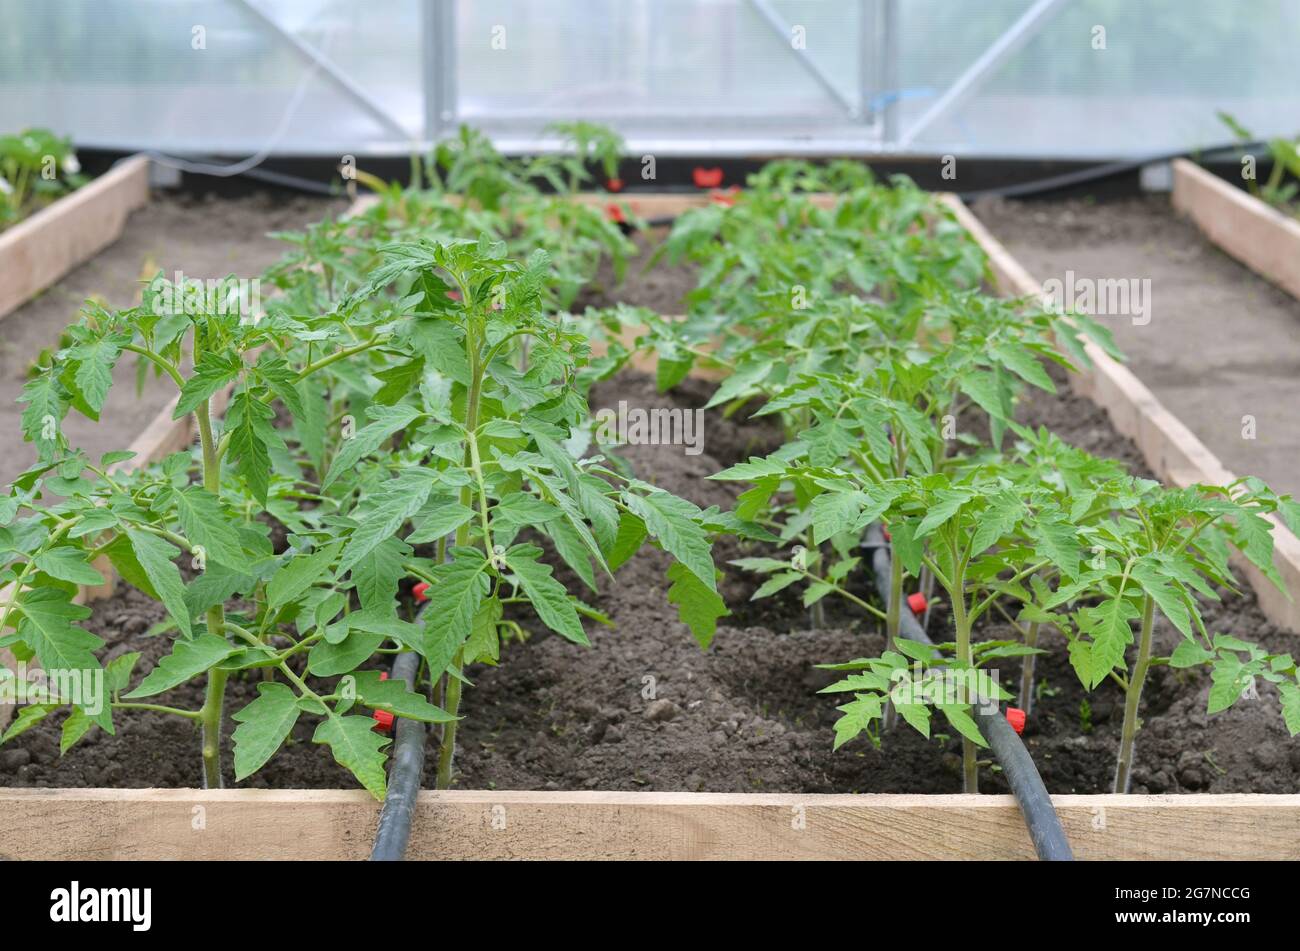 File di piante di pomodoro che crescono su un letto vegetale in una serra con un sistema di irrigazione a goccia. Concetto di agricoltura biologica. Foto Stock